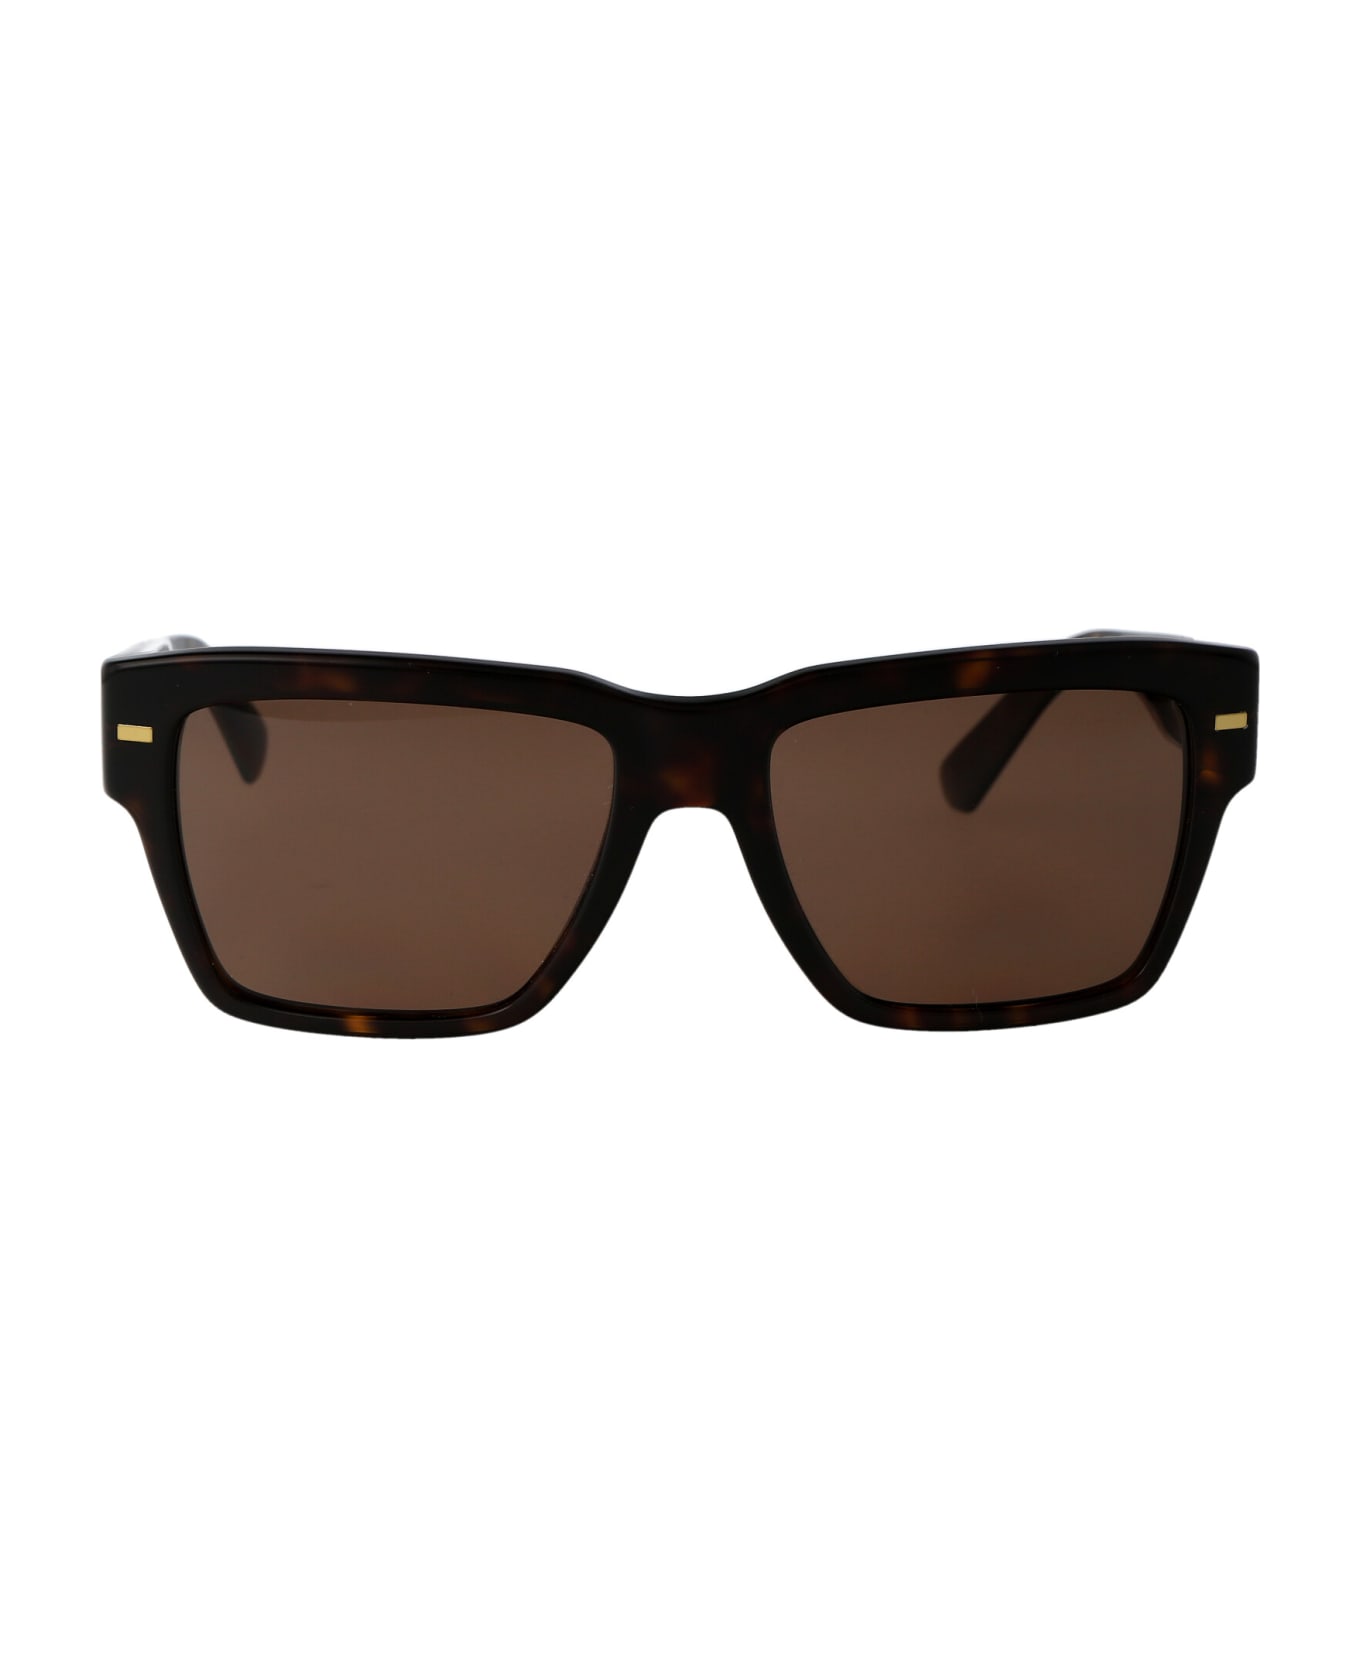 Dolce & Gabbana Eyewear 0dg4431 Sunglasses - 502/73 HAVANA